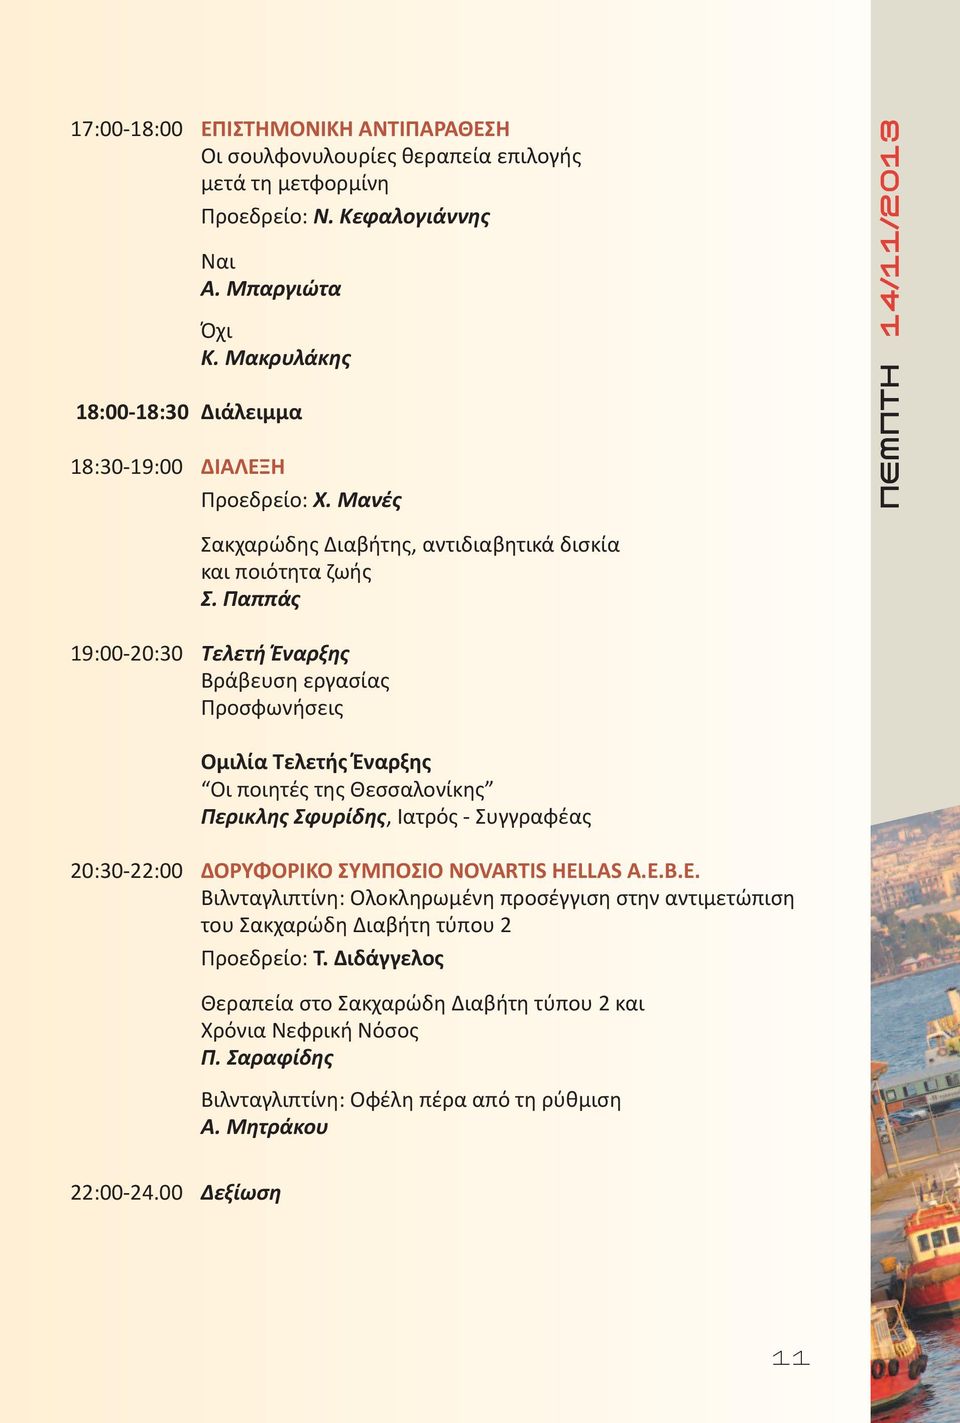 Παππάς 9:00-20:30 Τελετή Έναρξης Βράβευση εργασίας Προσφωνήσεις Ομιλία Τελετής Έναρξης Οι ποιητές της Θεσσαλονίκης Περικλης Σφυρίδης, Ιατρός - Συγγραφέας 20:30-22:00 ΔΟΡΥΦΟΡΙΚΟ ΣΥΜΠΟΣΙΟ